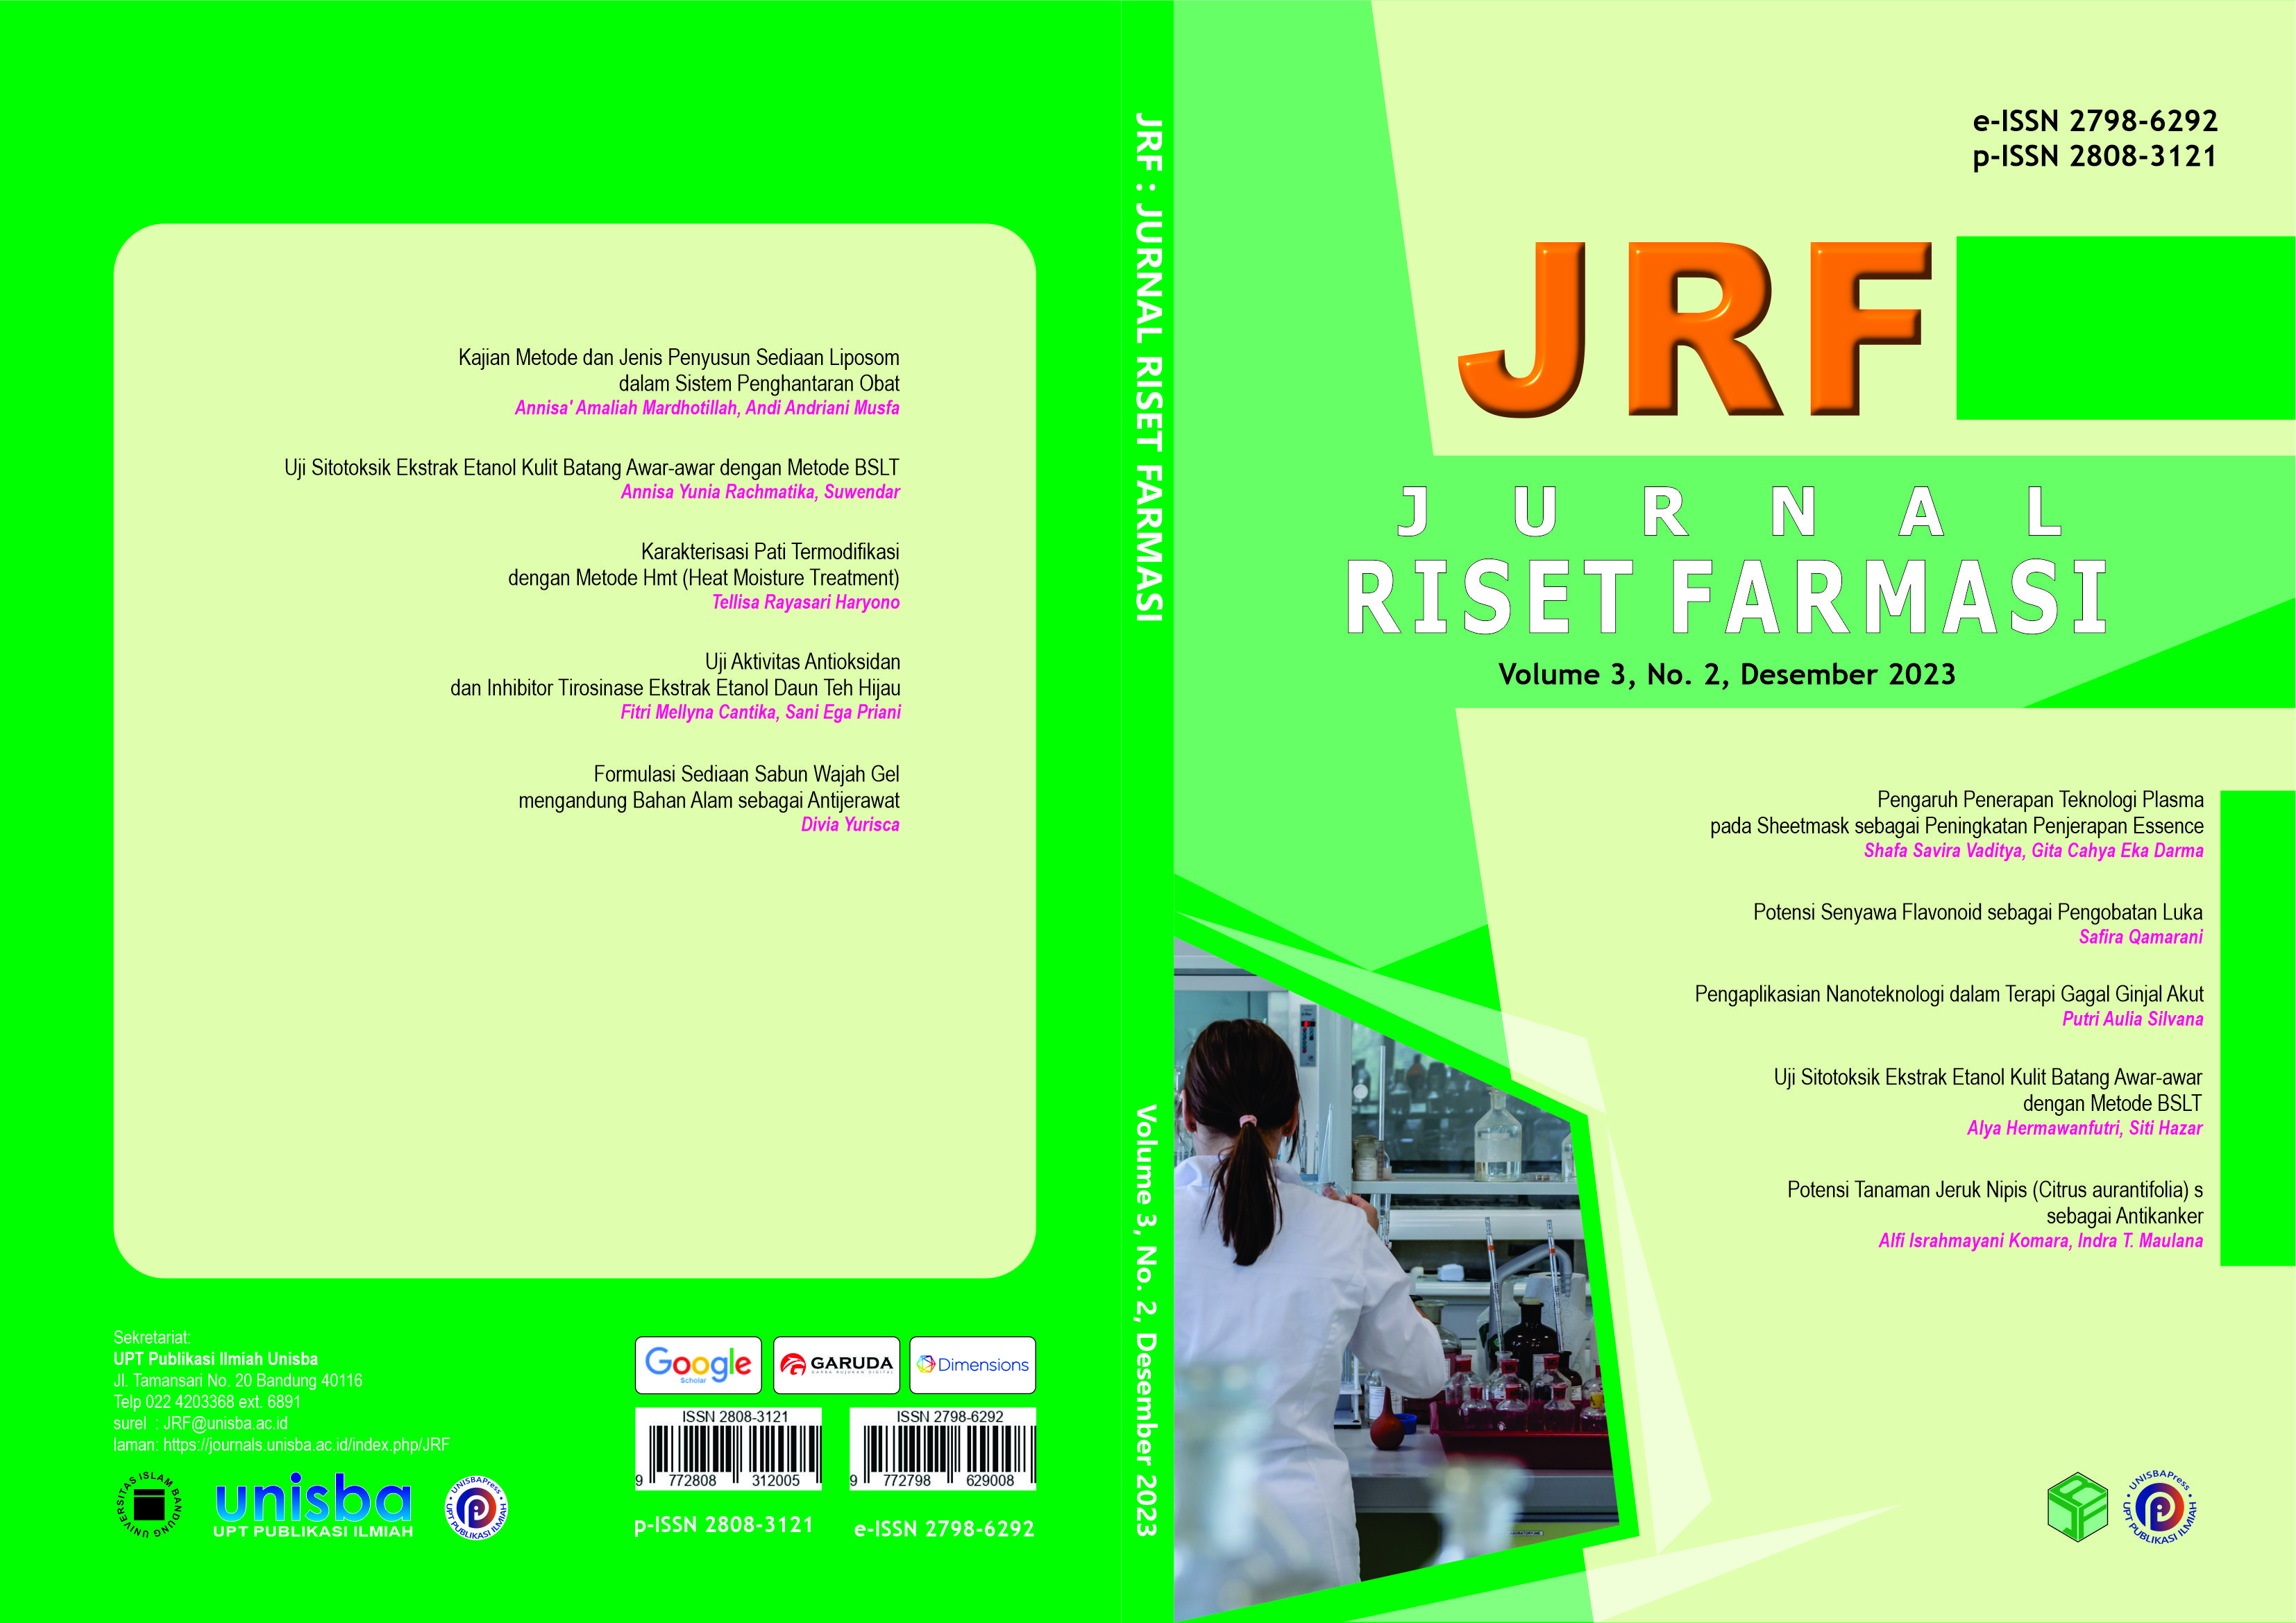 					View Volume 3, No. 2, Desember 2023, Jurnal Riset Farmasi (JRF)
				